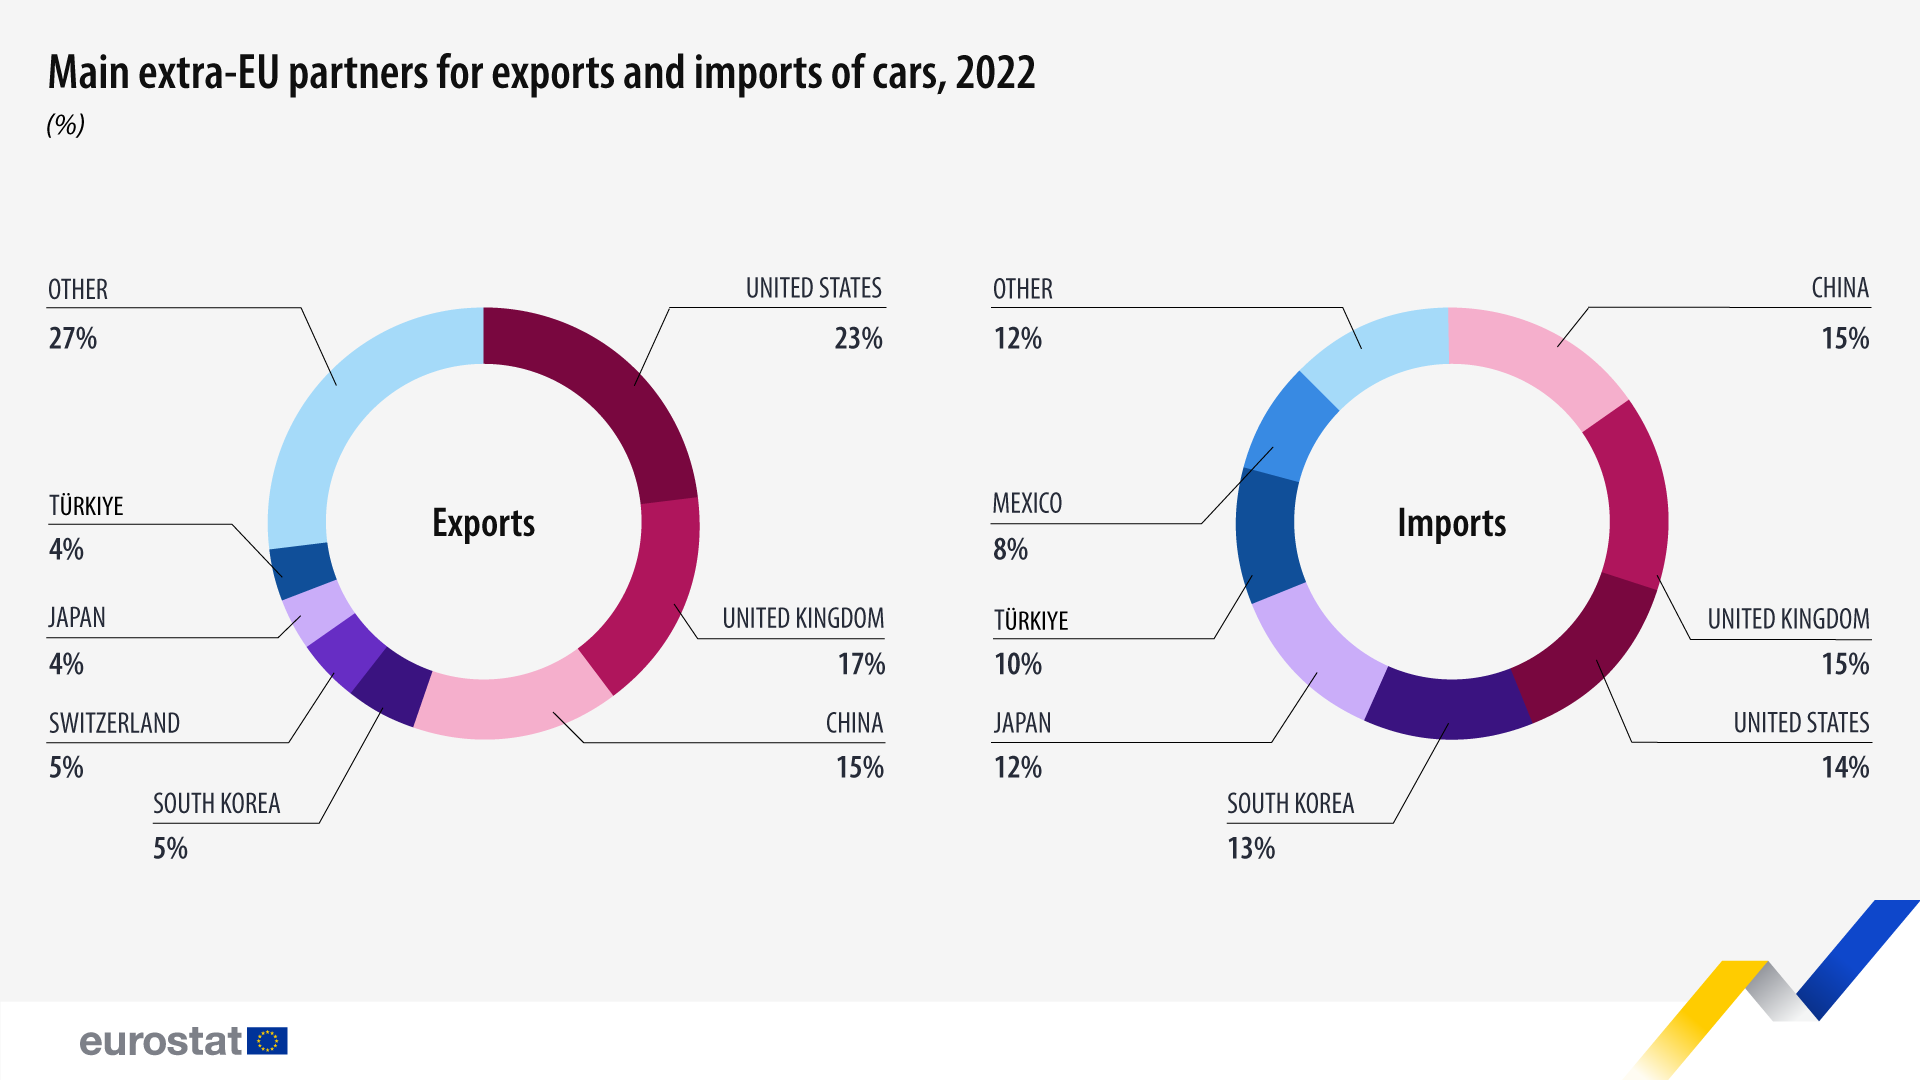 Infographic: Κύριοι εταίροι εκτός ΕΕ για εξαγωγές και εισαγωγές αυτοκινήτων, %, 2022